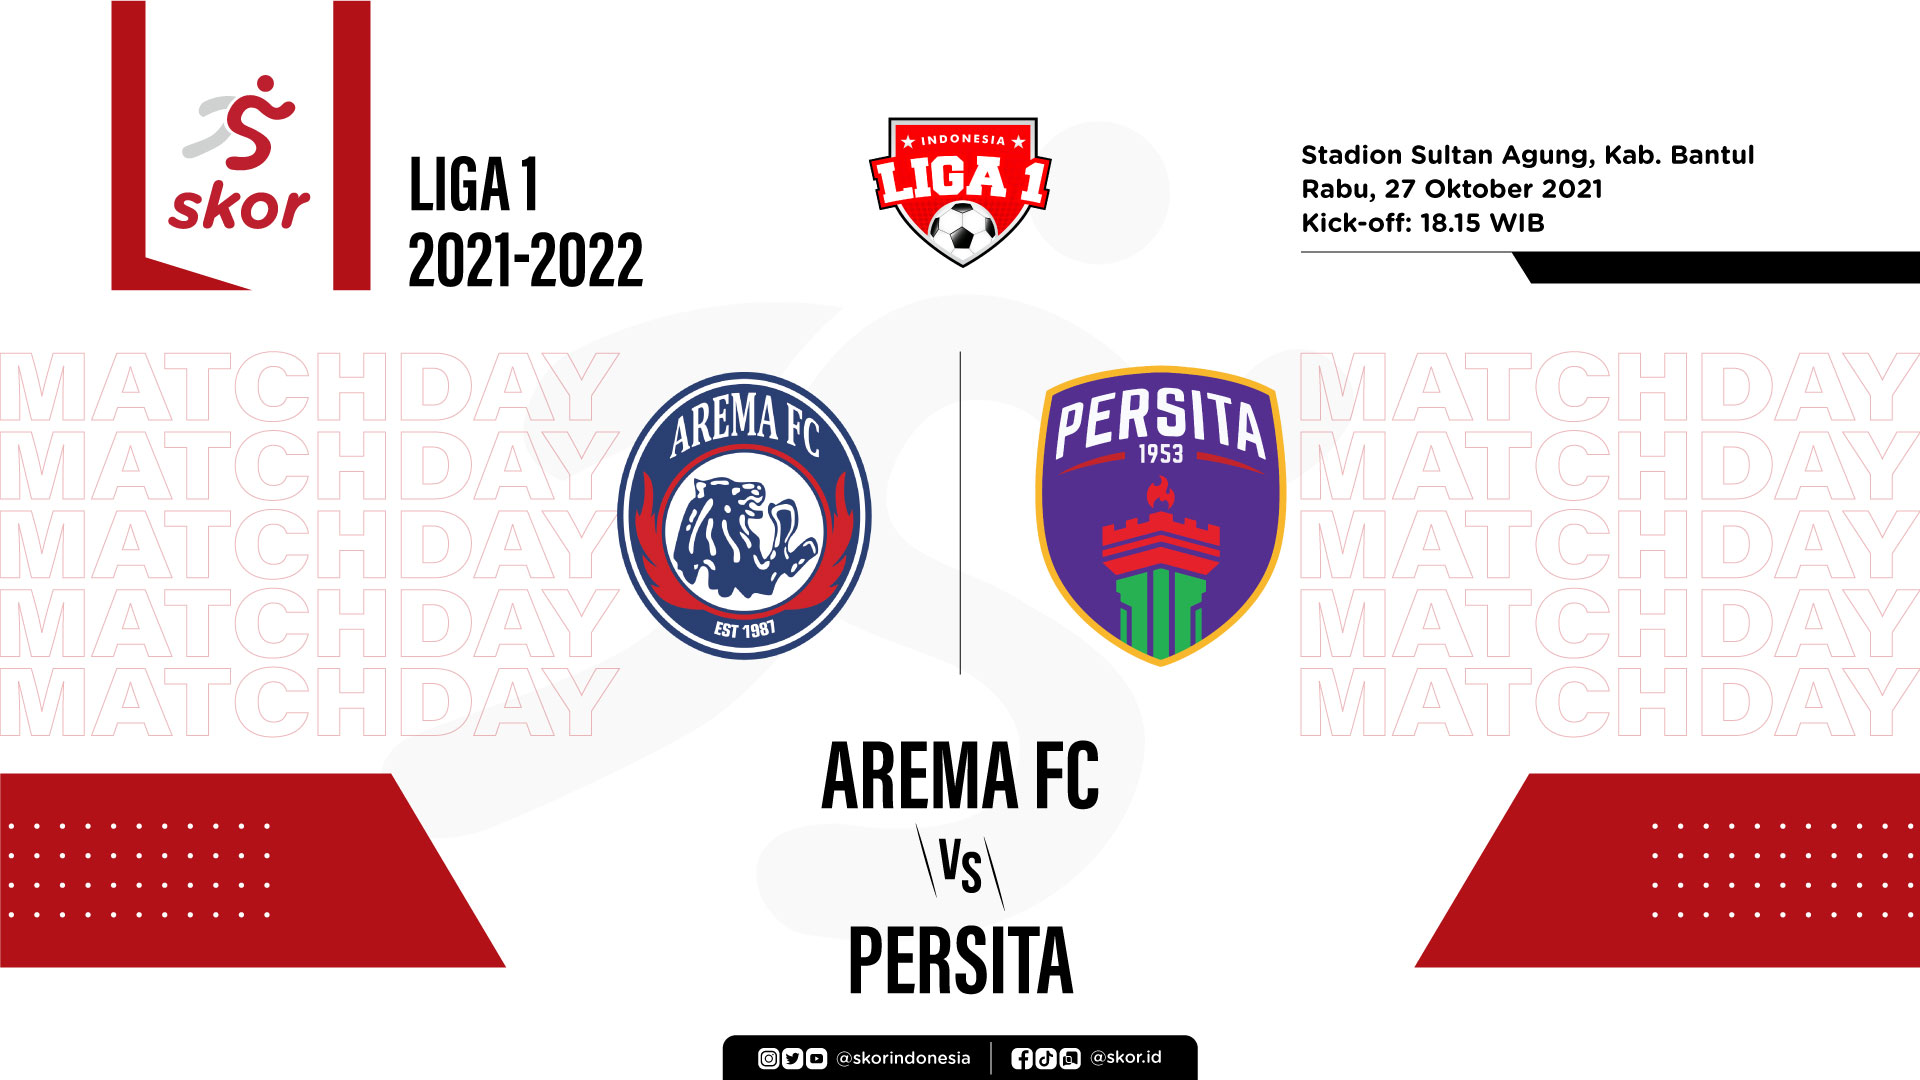 Arema FC vs Persita: Prediksi dan Link Live Streaming